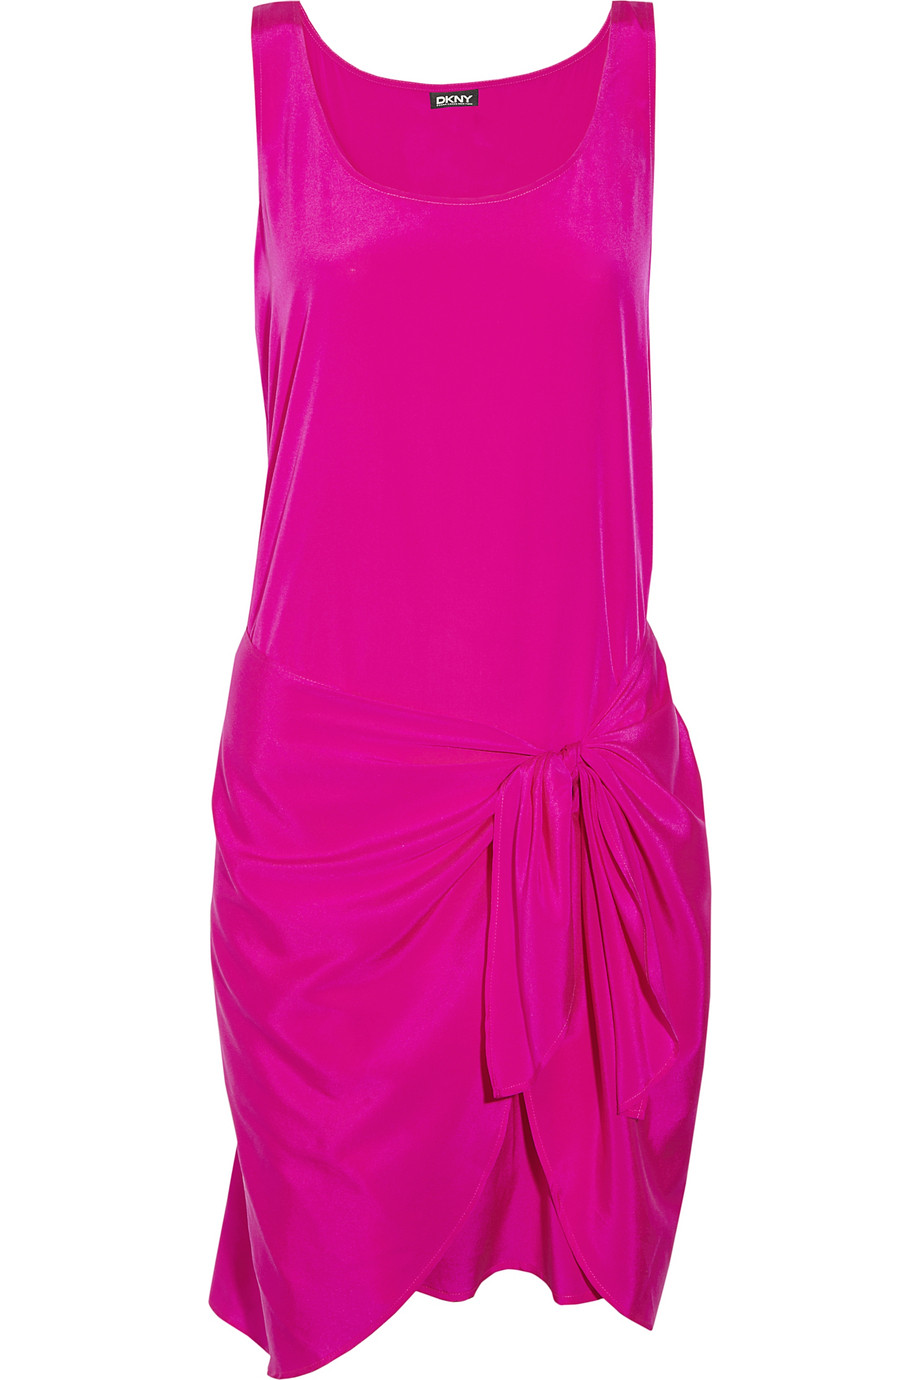 Lyst - Dkny Tie Waist Stretch Silk Dress in Pink